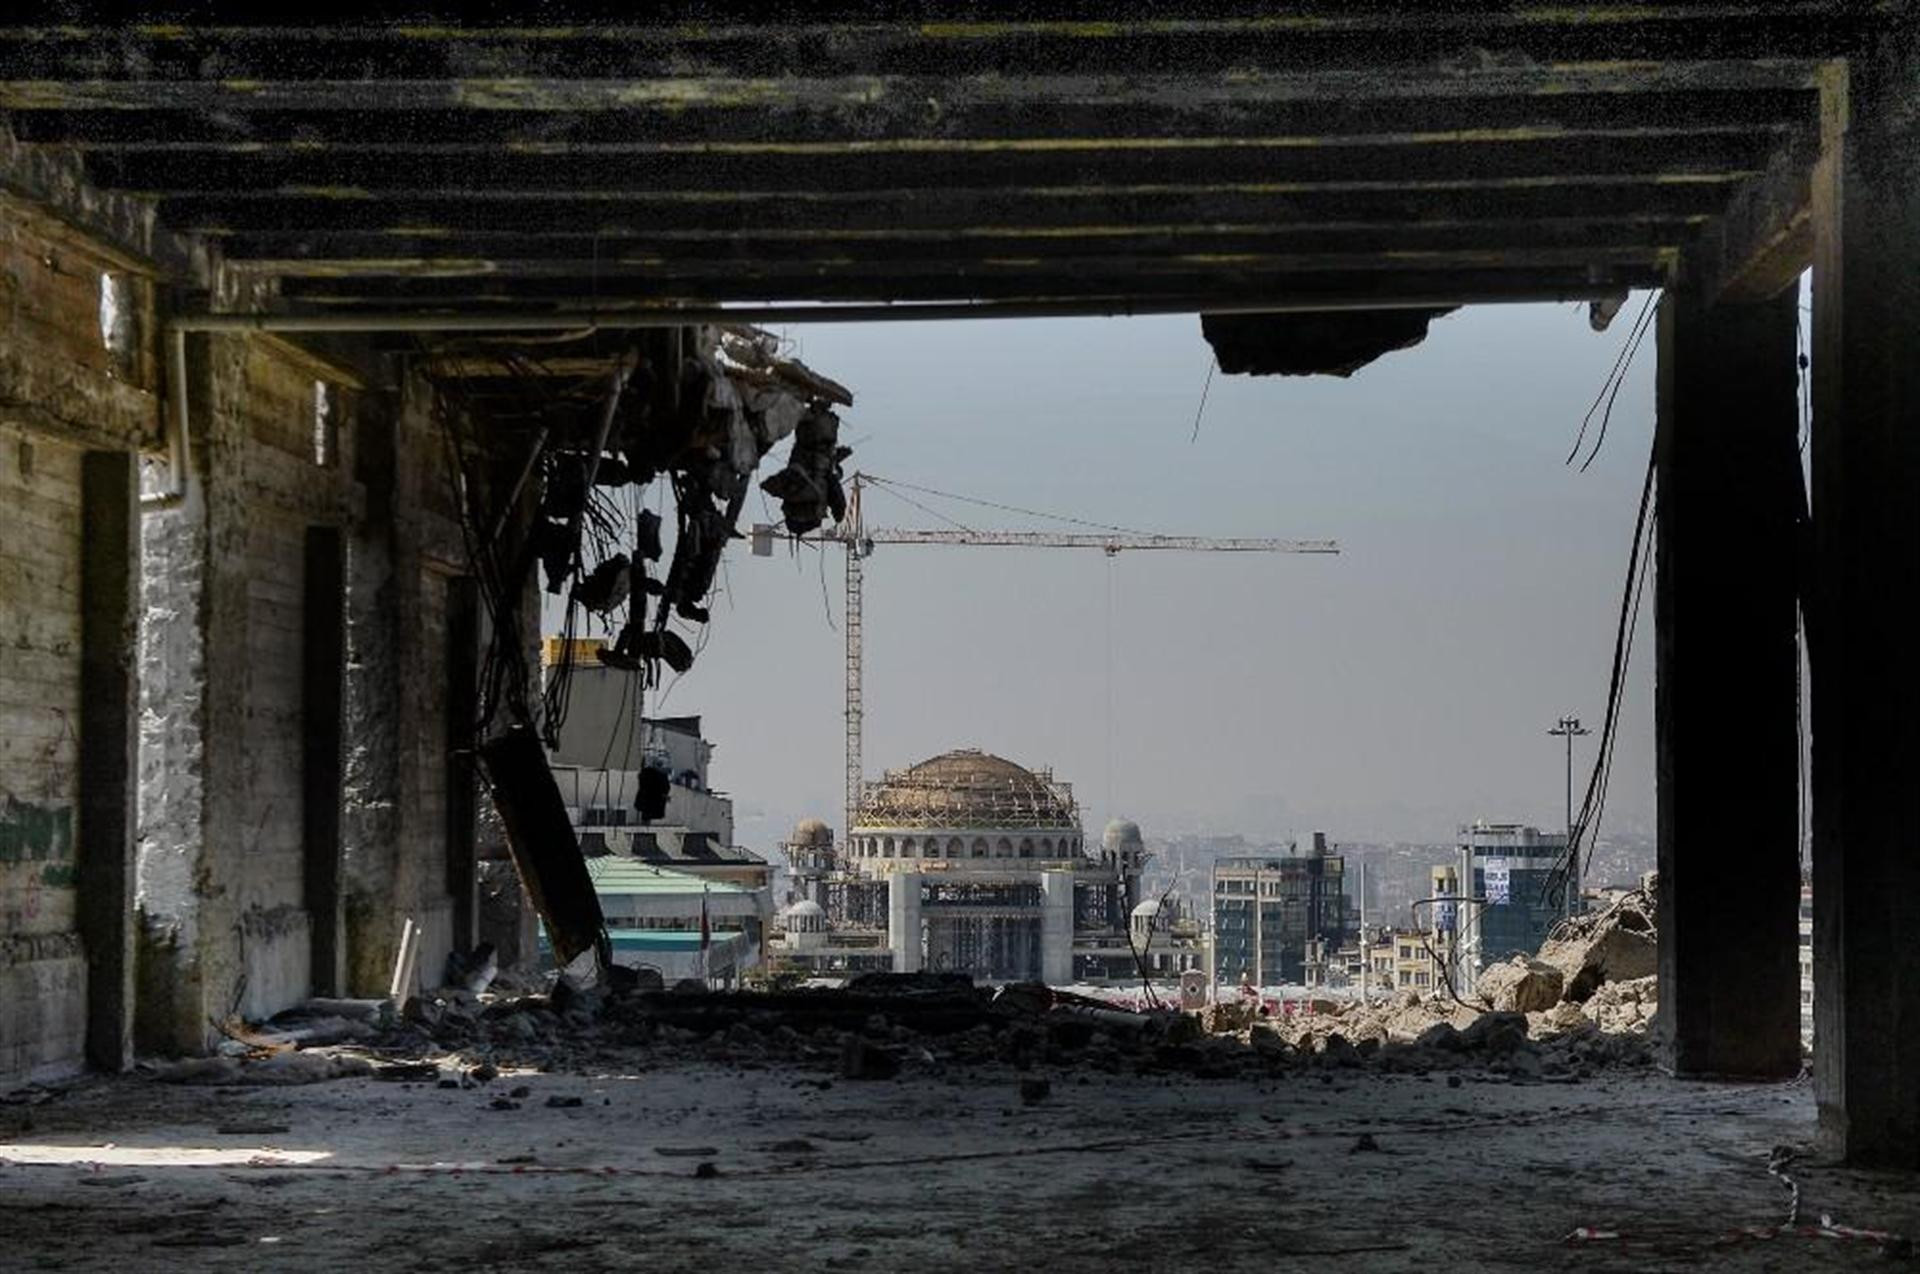 AKM'nin içinden Taksim Meydanı'na son bakış